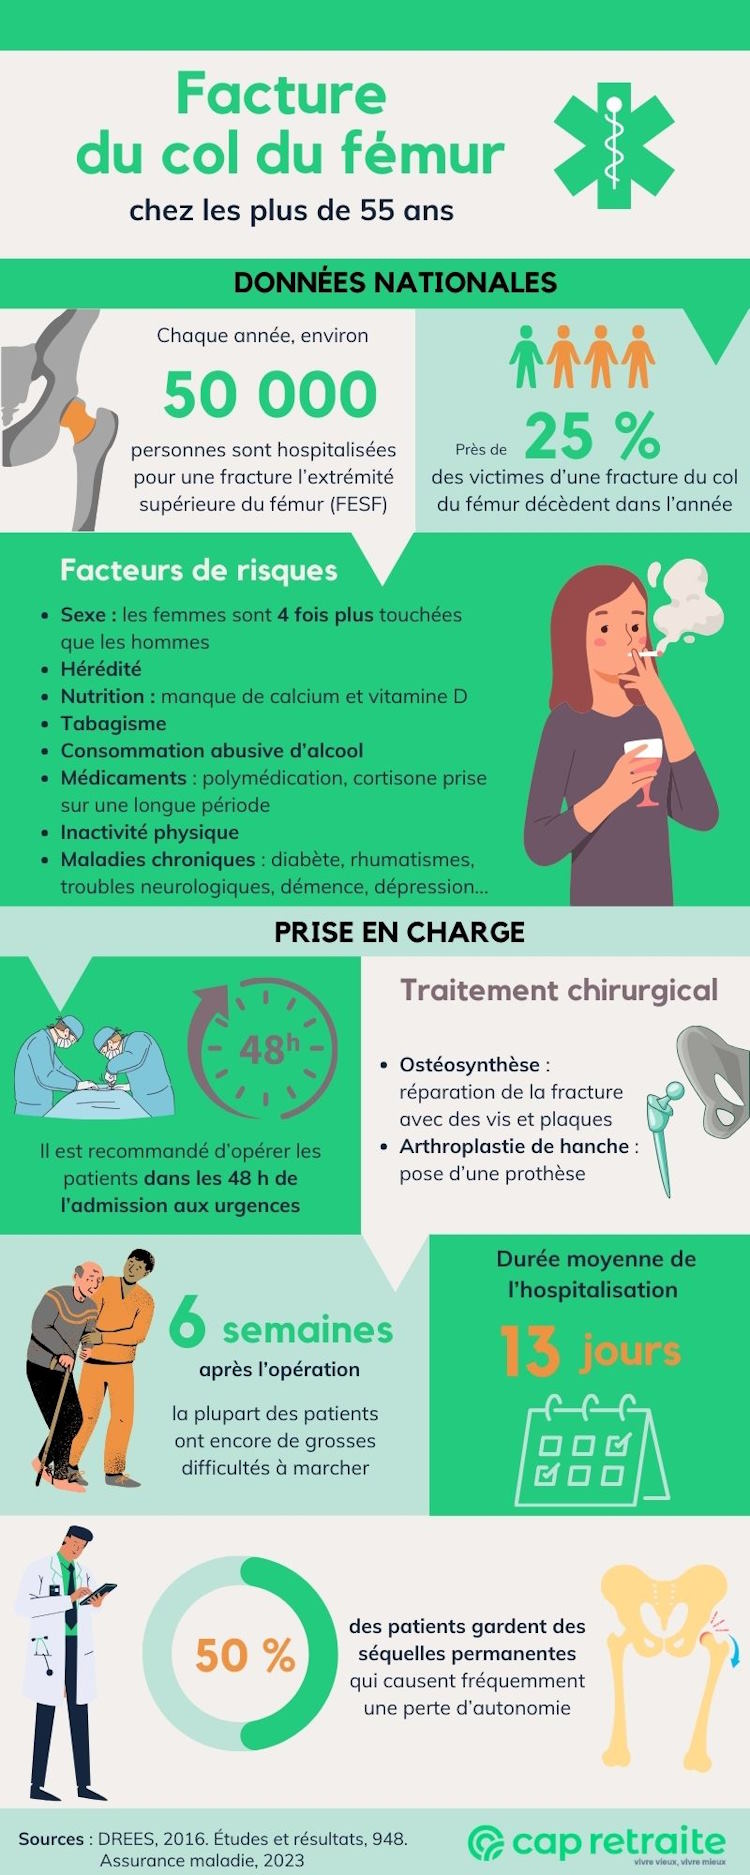 Infographie sur les facteurs de risque et traitements des fractures du col du fémur chez les personnes âgées de 55 ans et plus en France